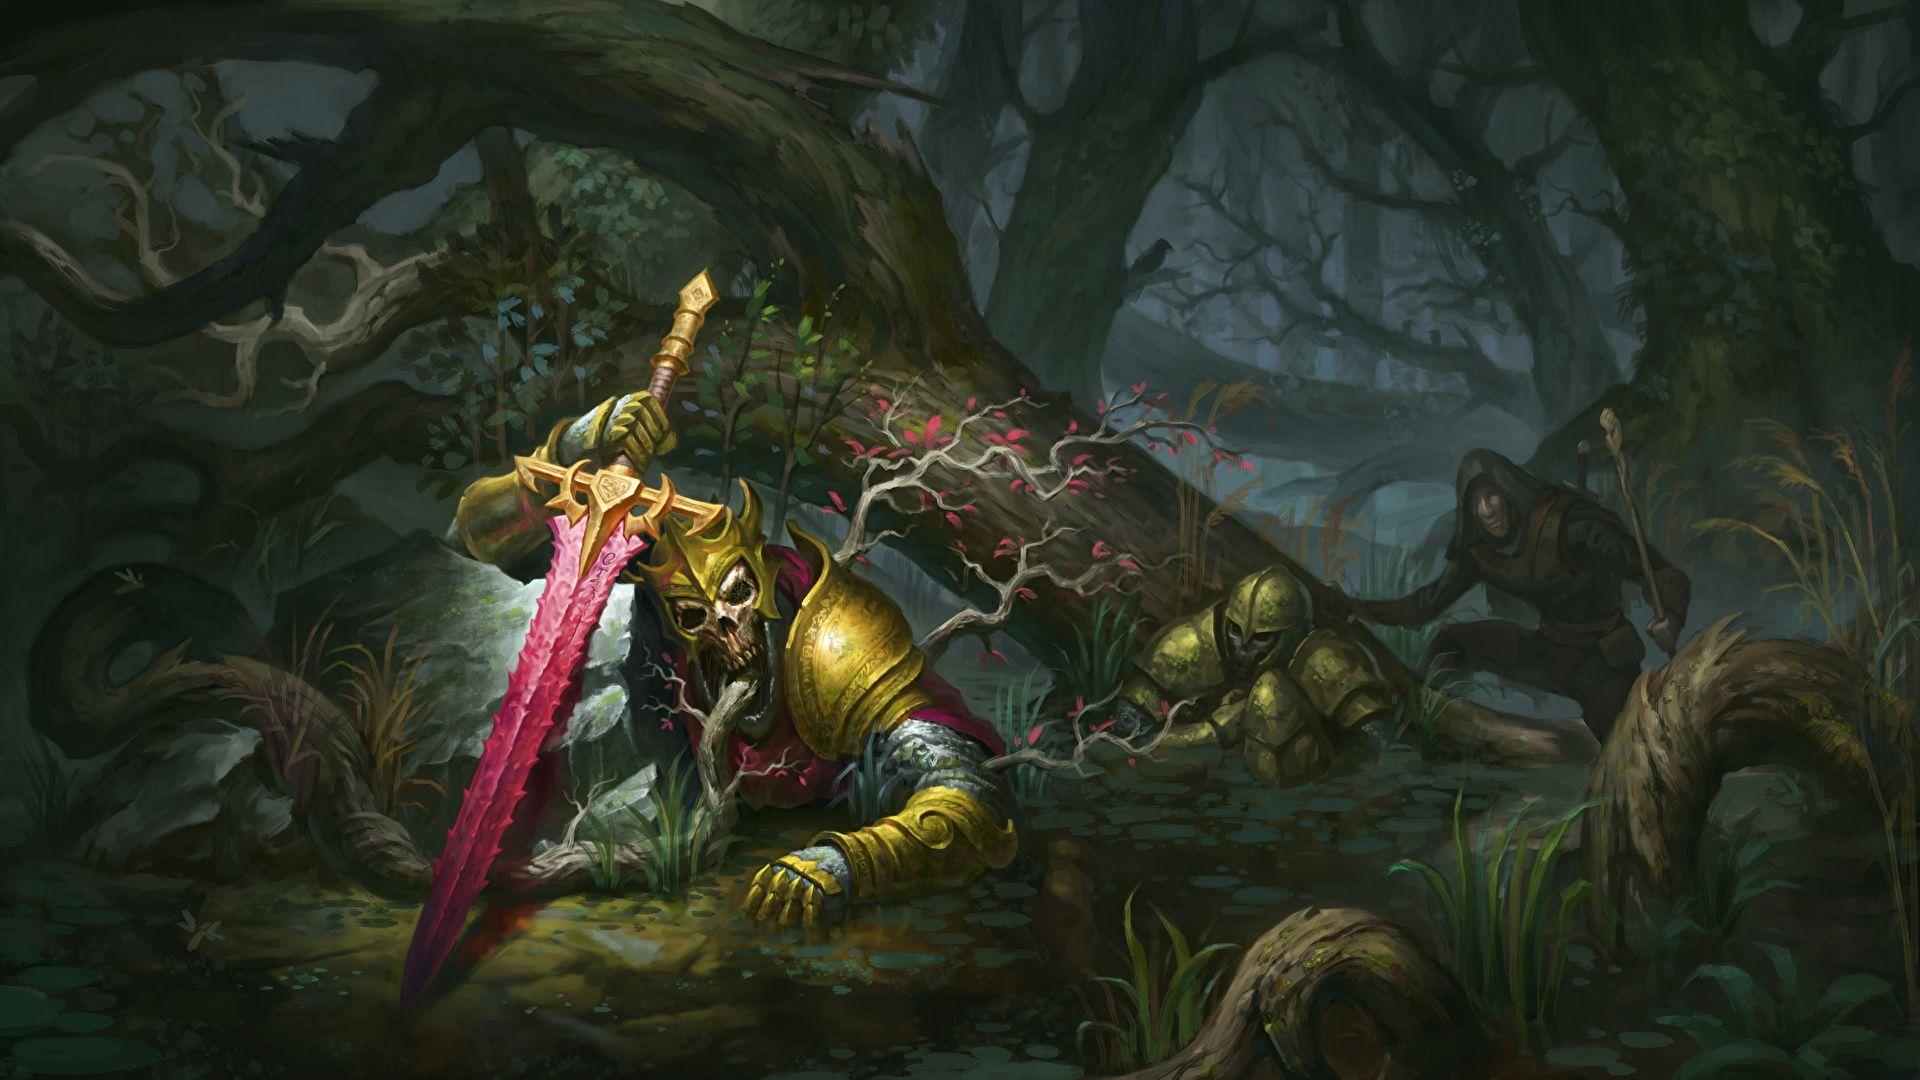 Image Armor Swords Dead King Fantasy Skeleton Forests 1920x1080